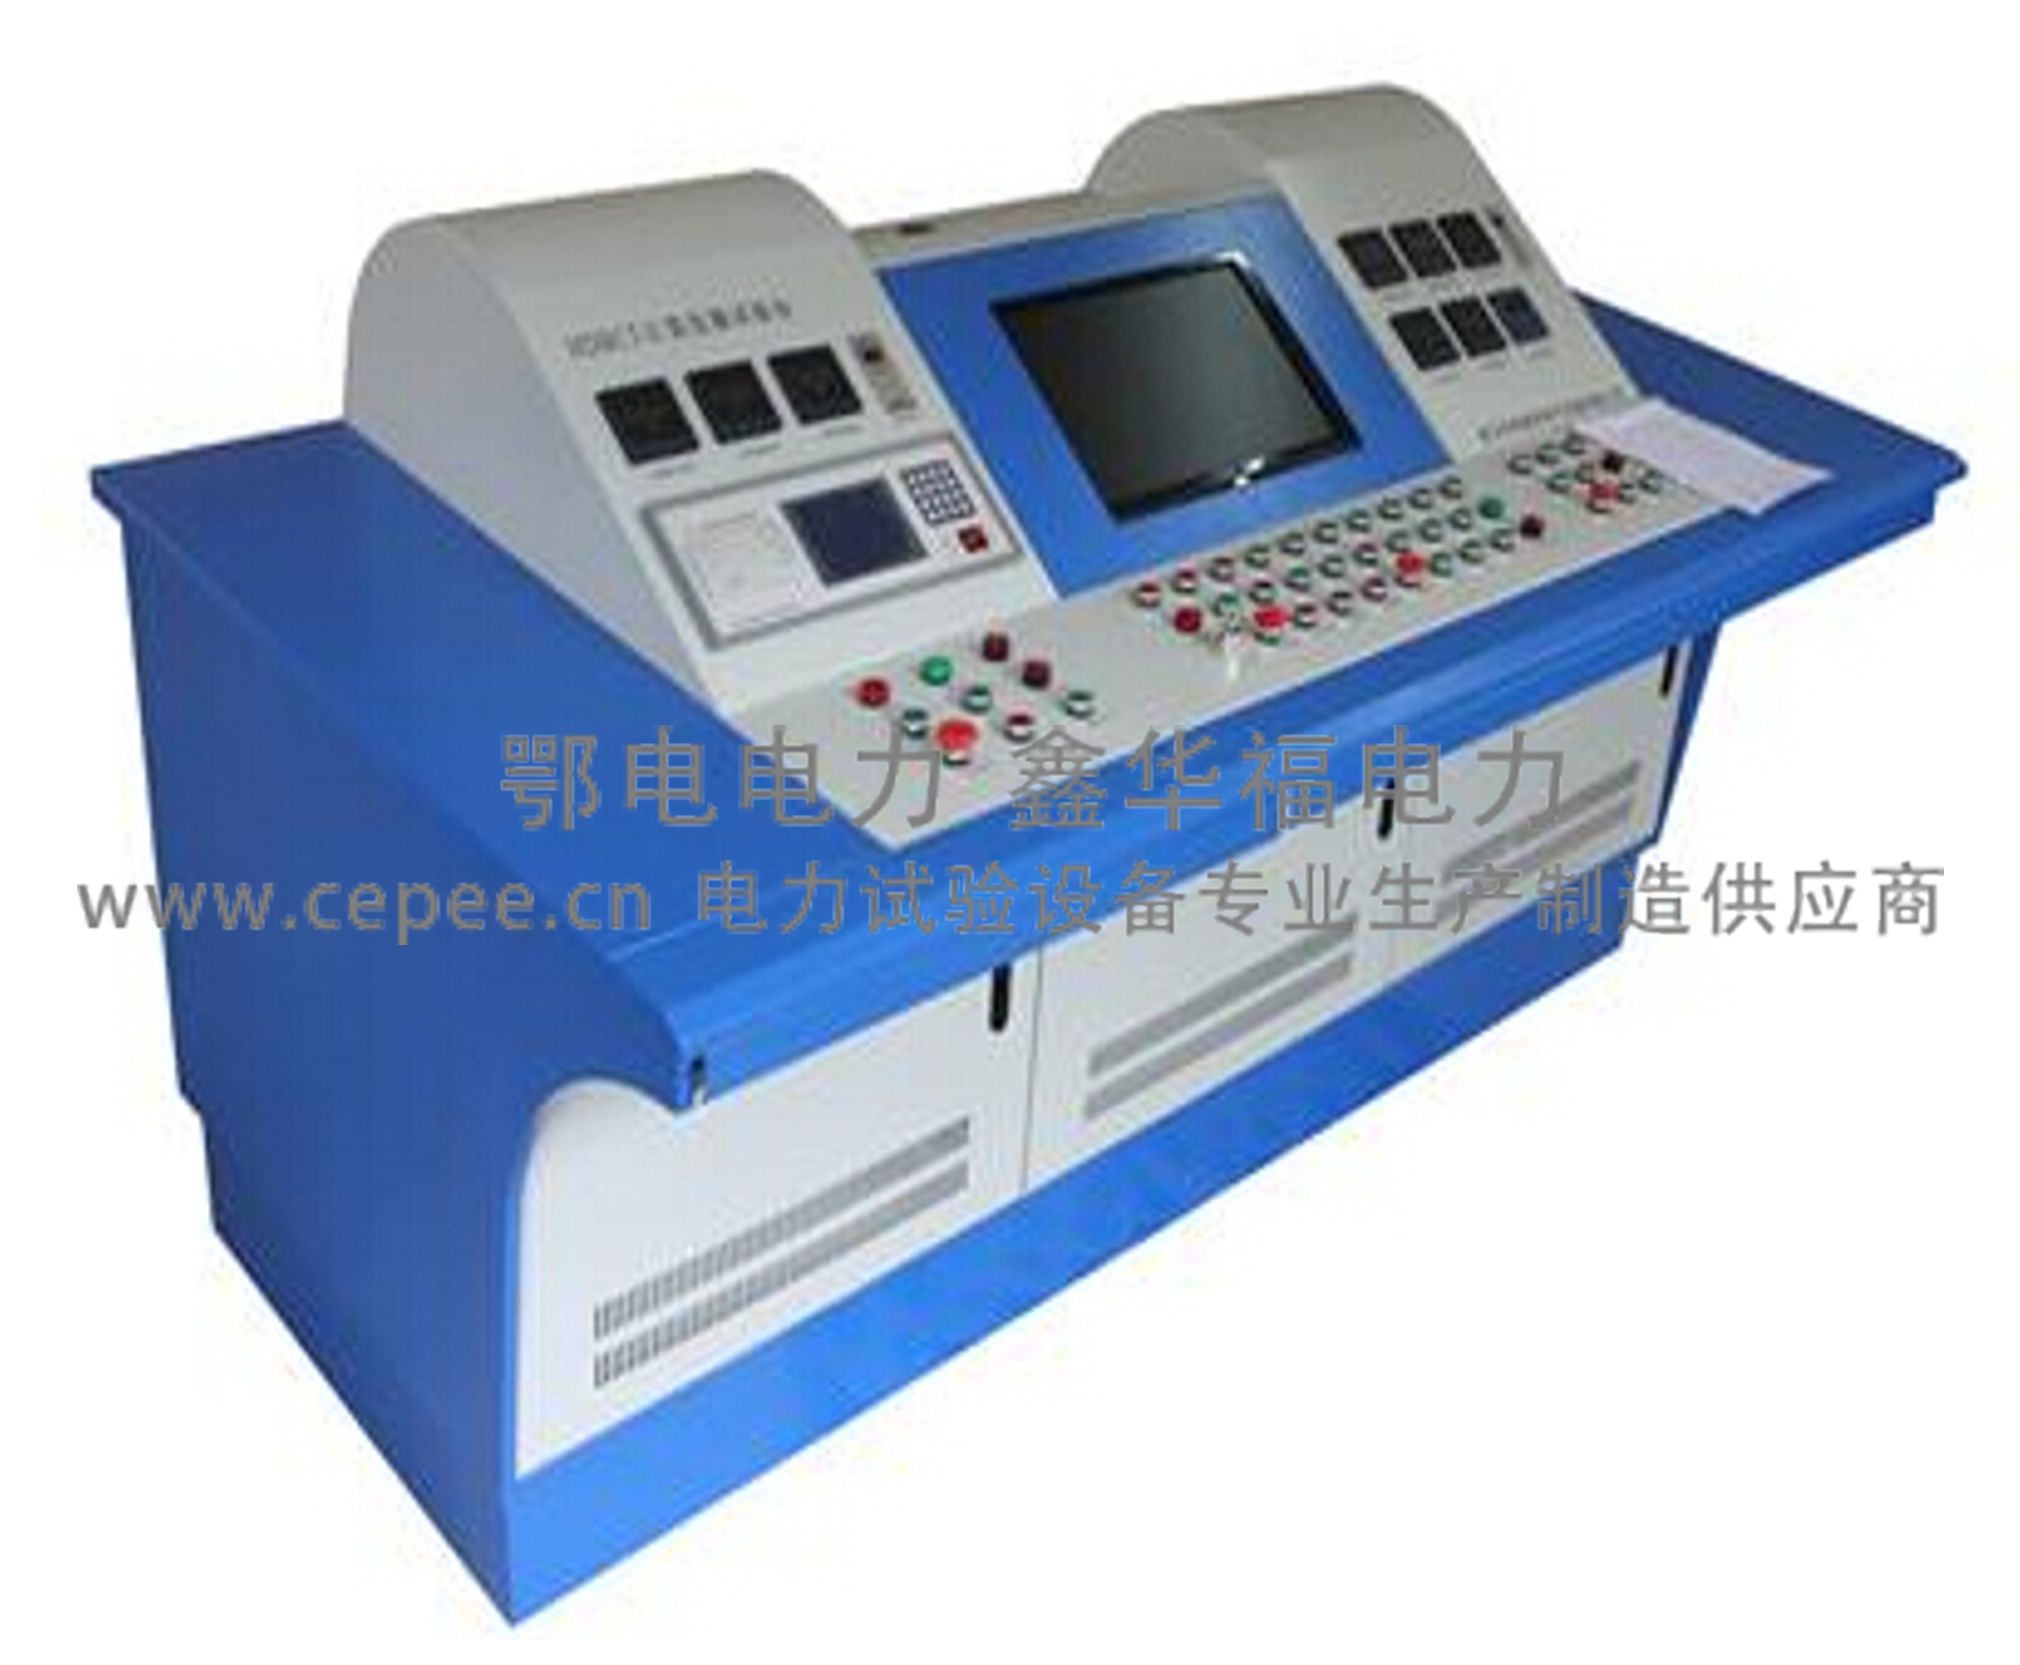 YJB-6002继电保护测试仪_单相-武汉鄂电电力试验设备有限公司